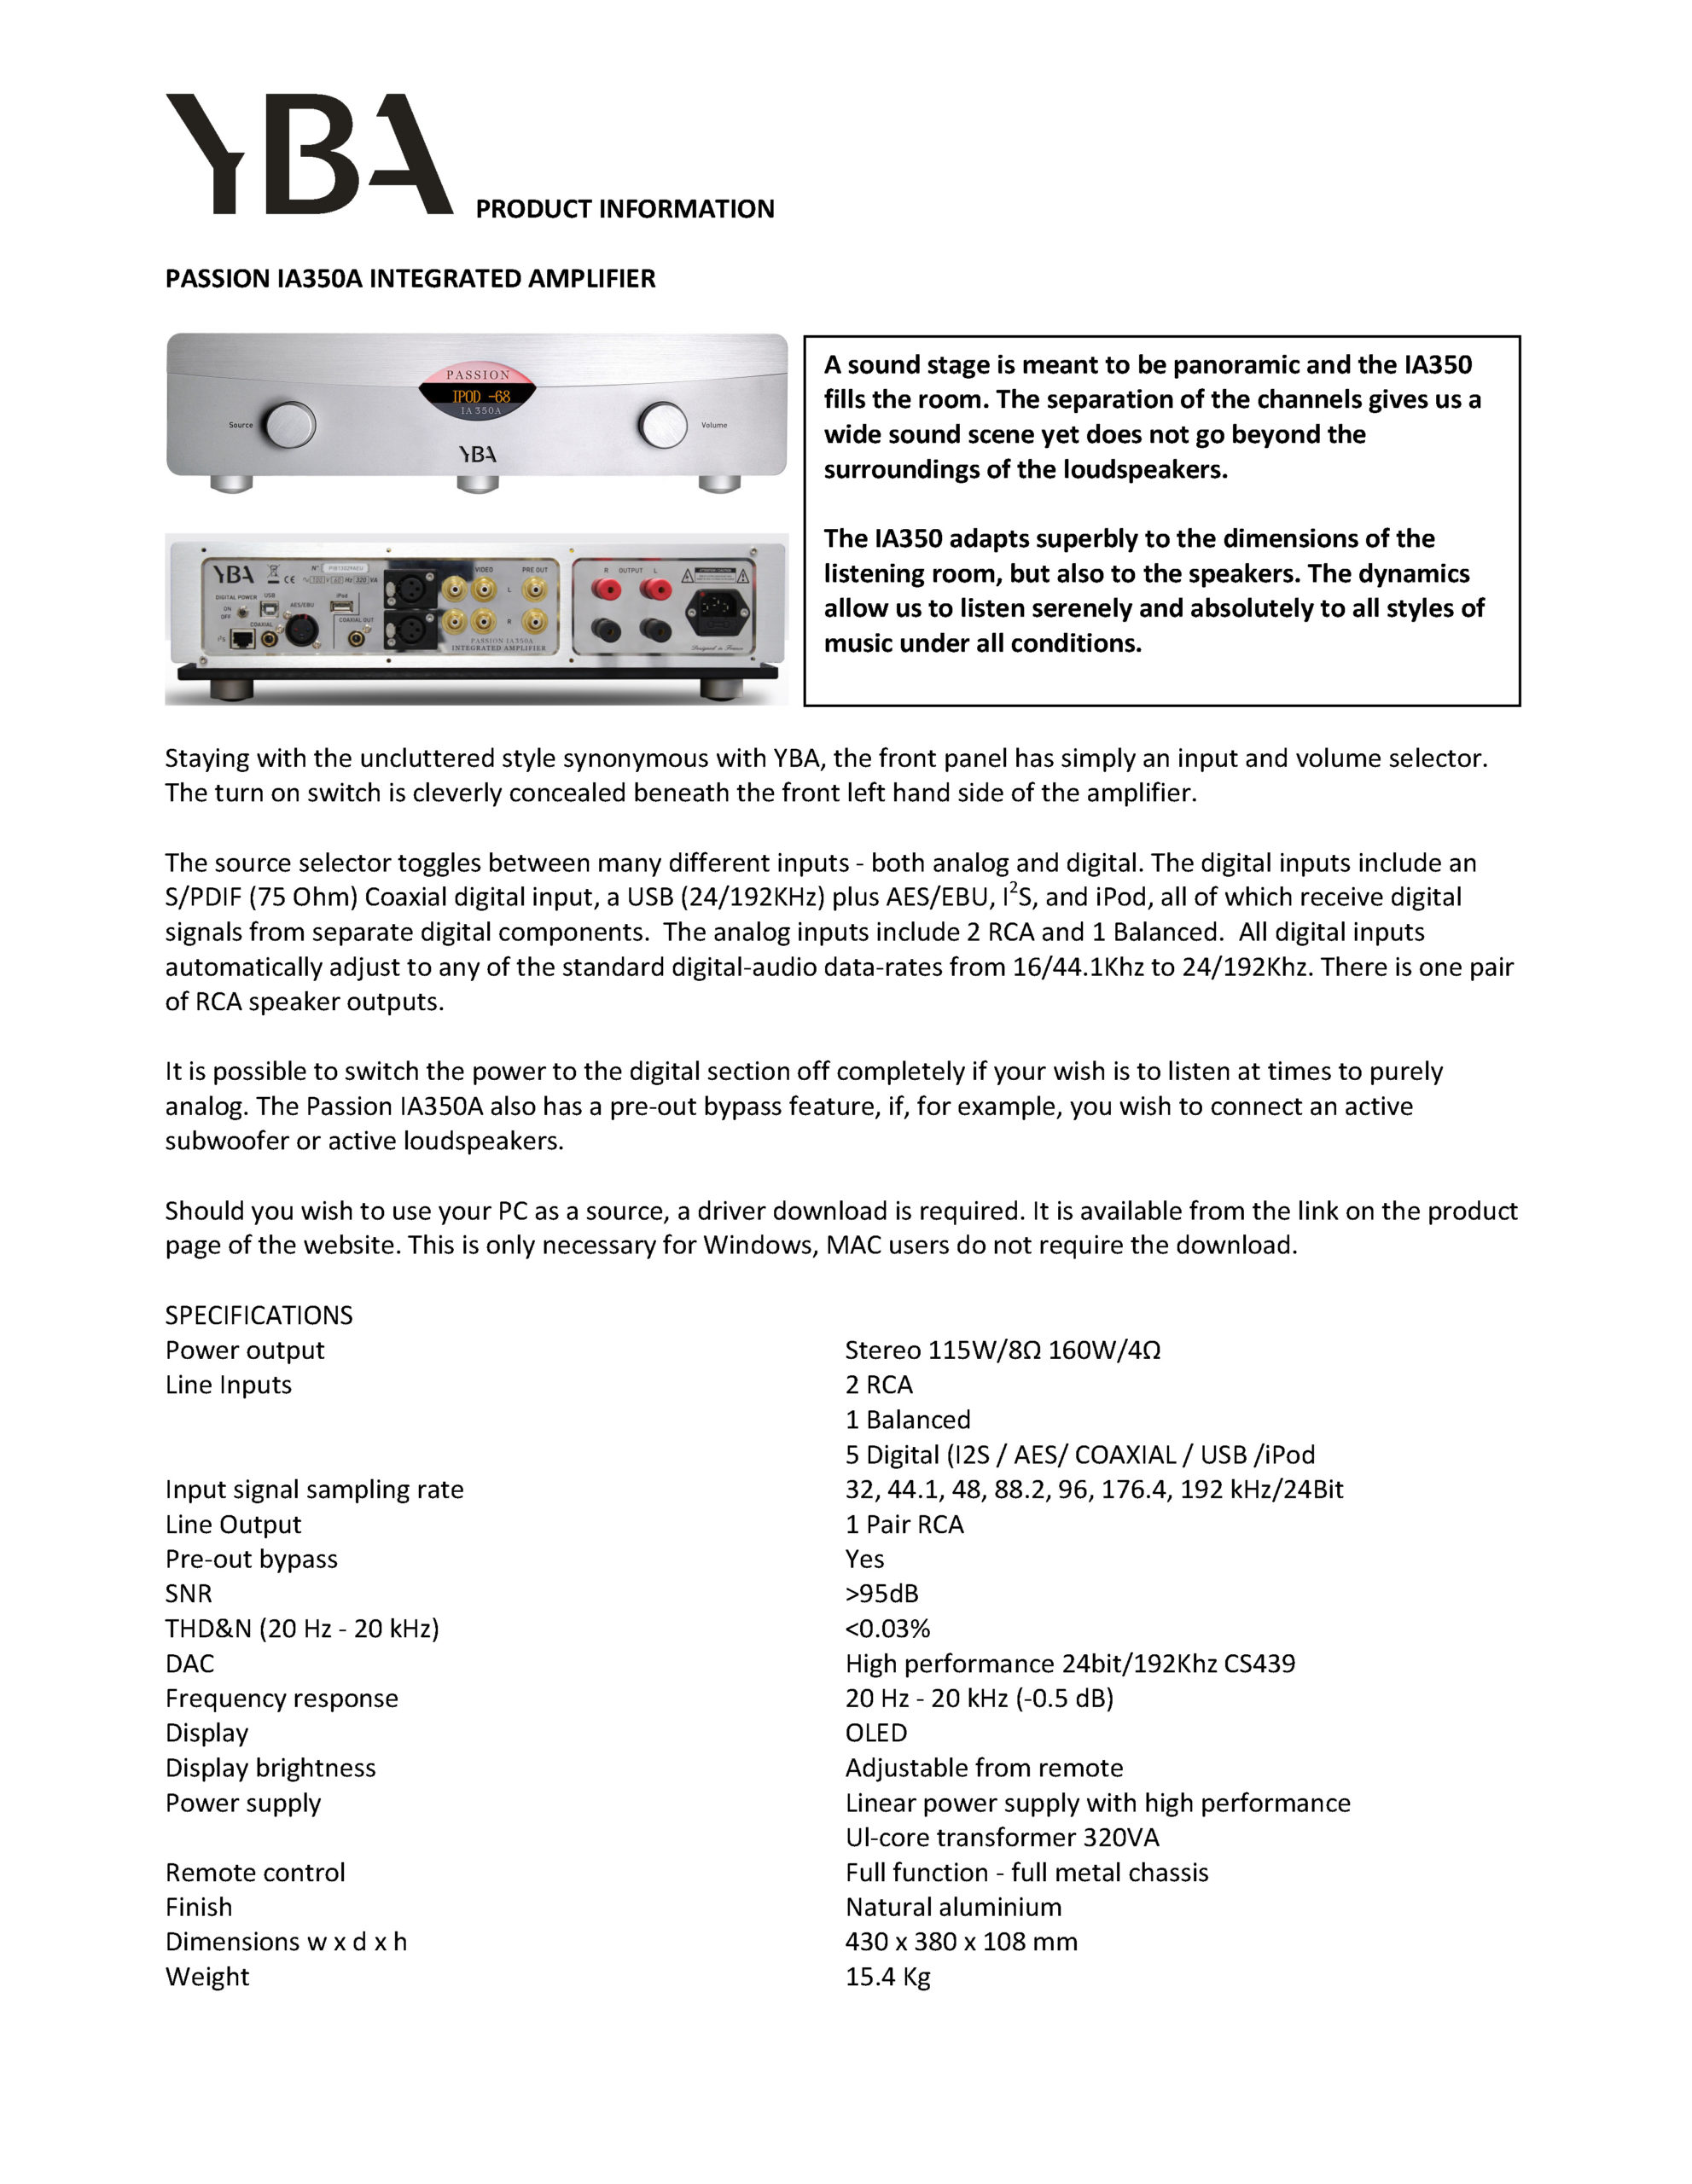 YBA Passion IA350A Info Sheet - Norman Audio